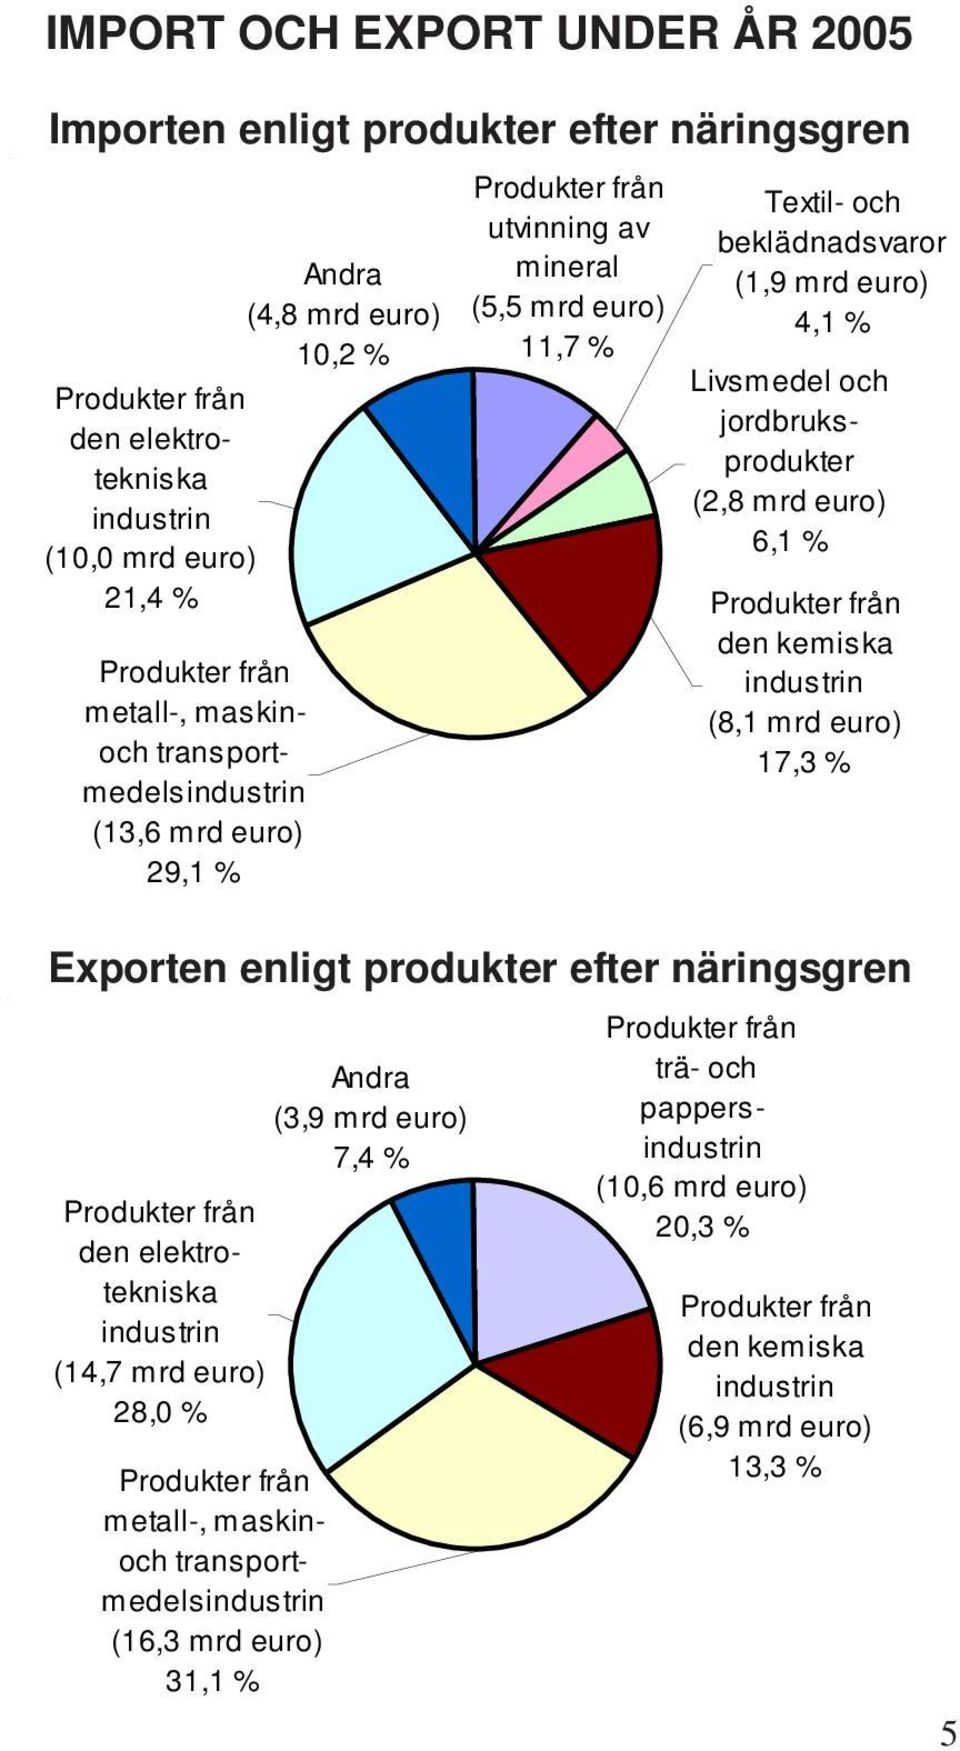 jordbruksprodukter (2,8 mrd euro) 6,1 % Produkter från den kemiska industrin (8,1 mrd euro) 17,3 % Exporten enligt produkter efter näringsgren Andra (3,9 mrd euro) 7,4 % Produkter från den